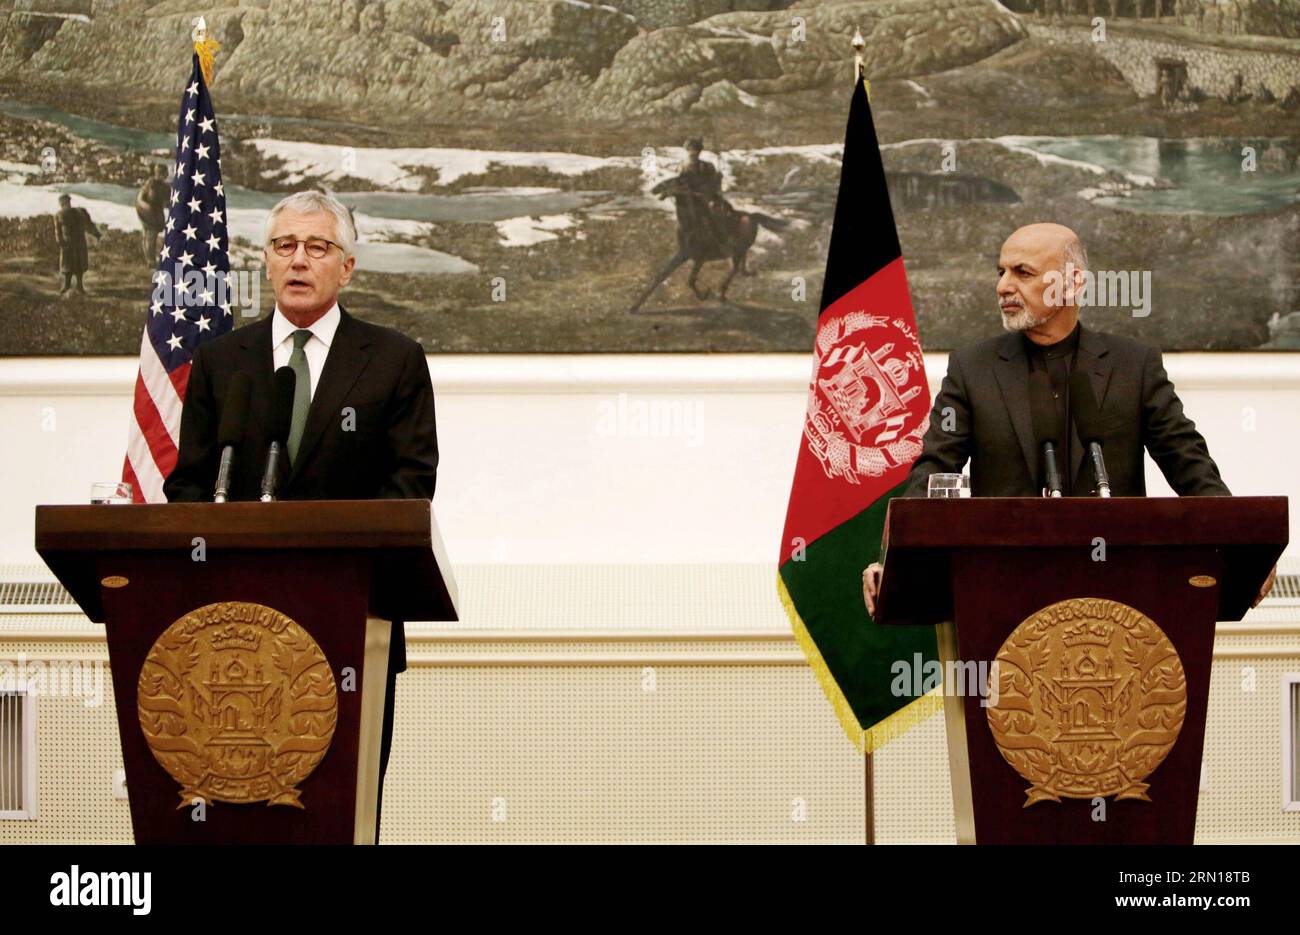 Il segretario alla difesa degli Stati Uniti Chuck Hagel (L) parla durante una conferenza stampa congiunta con il presidente afghano Mohammad Ashraf Ghani a Kabul, Afghanistan, 6 dicembre 2014. Il Segretario alla difesa Chuck Hagel ha detto qui sabato che Washington aveva deciso di tenere altre 1.000 truppe in Afghanistan oltre il 2014, portando il numero a 10.800. )(azp) AFGHANISTAN-KABUL-US-CONFERENZA STAMPA AhmadxMassoud PUBLICATIONxNOTxINxCHN il segretario alla difesa degli Stati Uniti Chuck Hagel l interviene durante una conferenza stampa congiunta con il presidente afghano Mohammad Ashraf Ghani a Kabul Afghanistan DEC 6 2014 in visita al Secre degli Stati Uniti Foto Stock